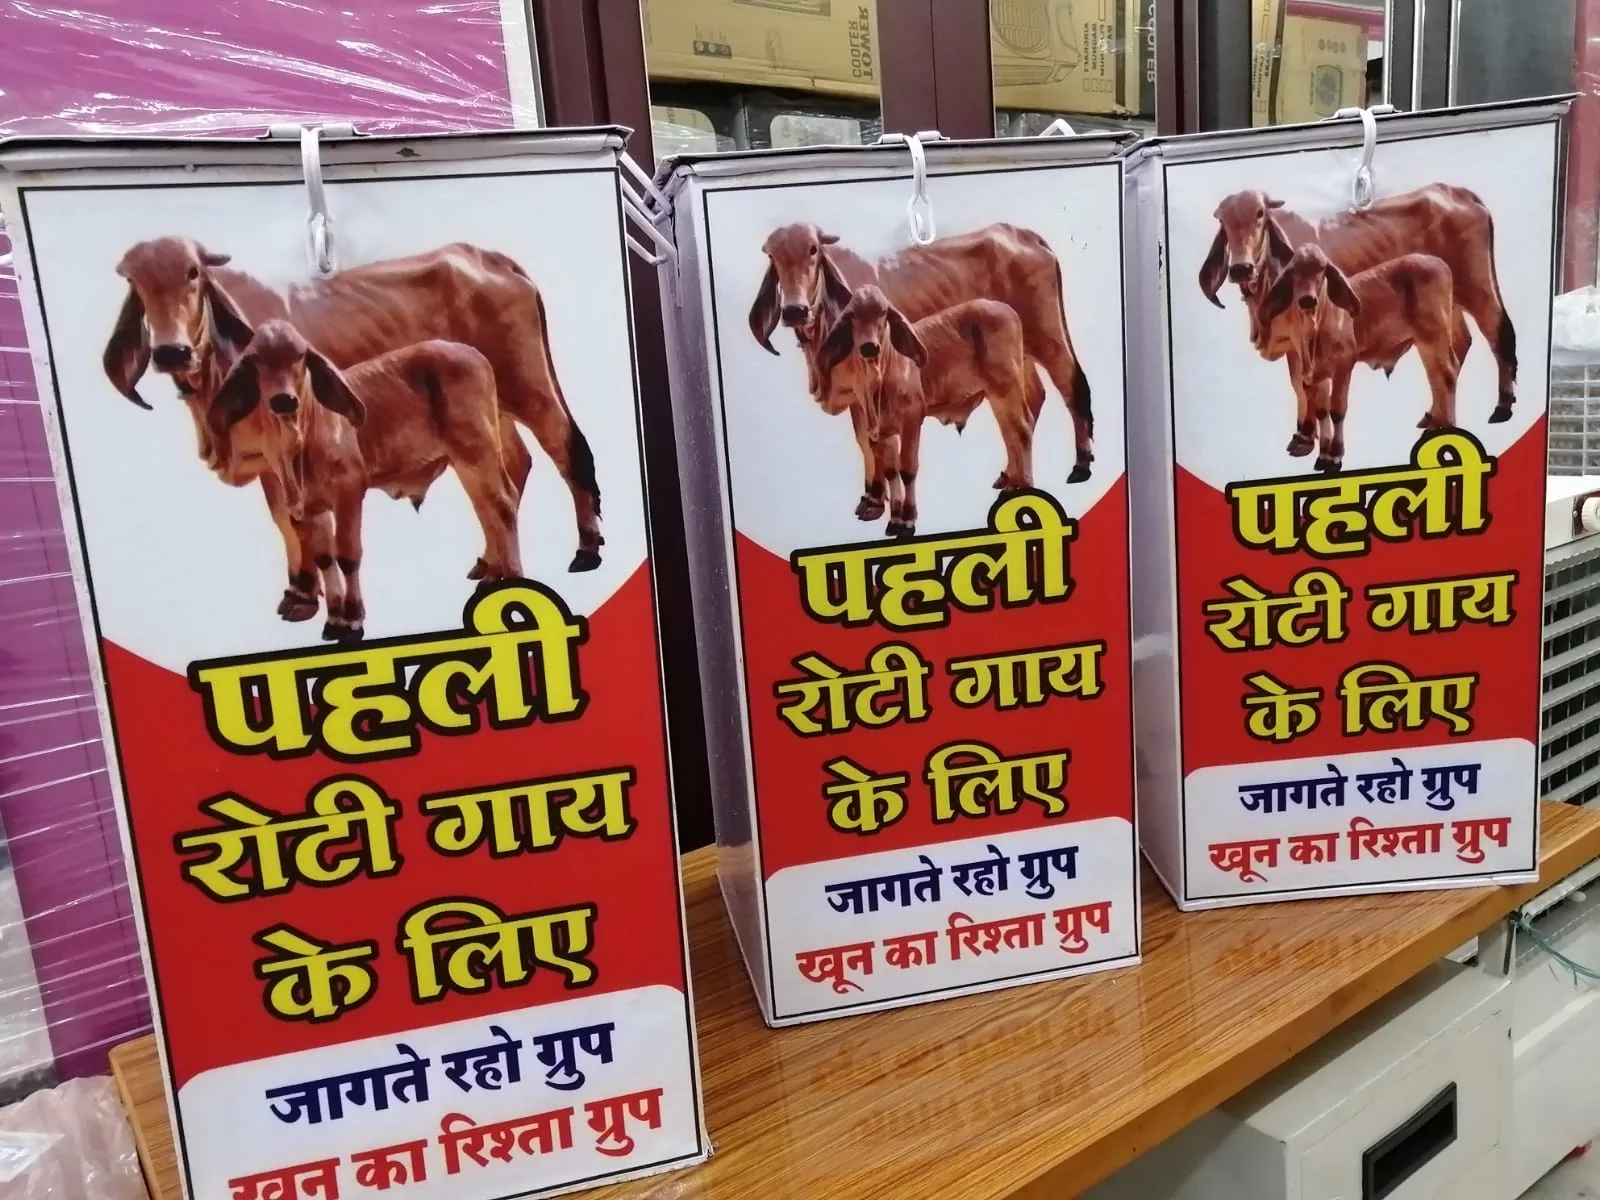 समाजसेवी रिंकू रितेश चौरसिया की अनुकरणीय पहल, पहली रोटी गाय के लिए मुहिम की हुई शुरुआत | New India Times